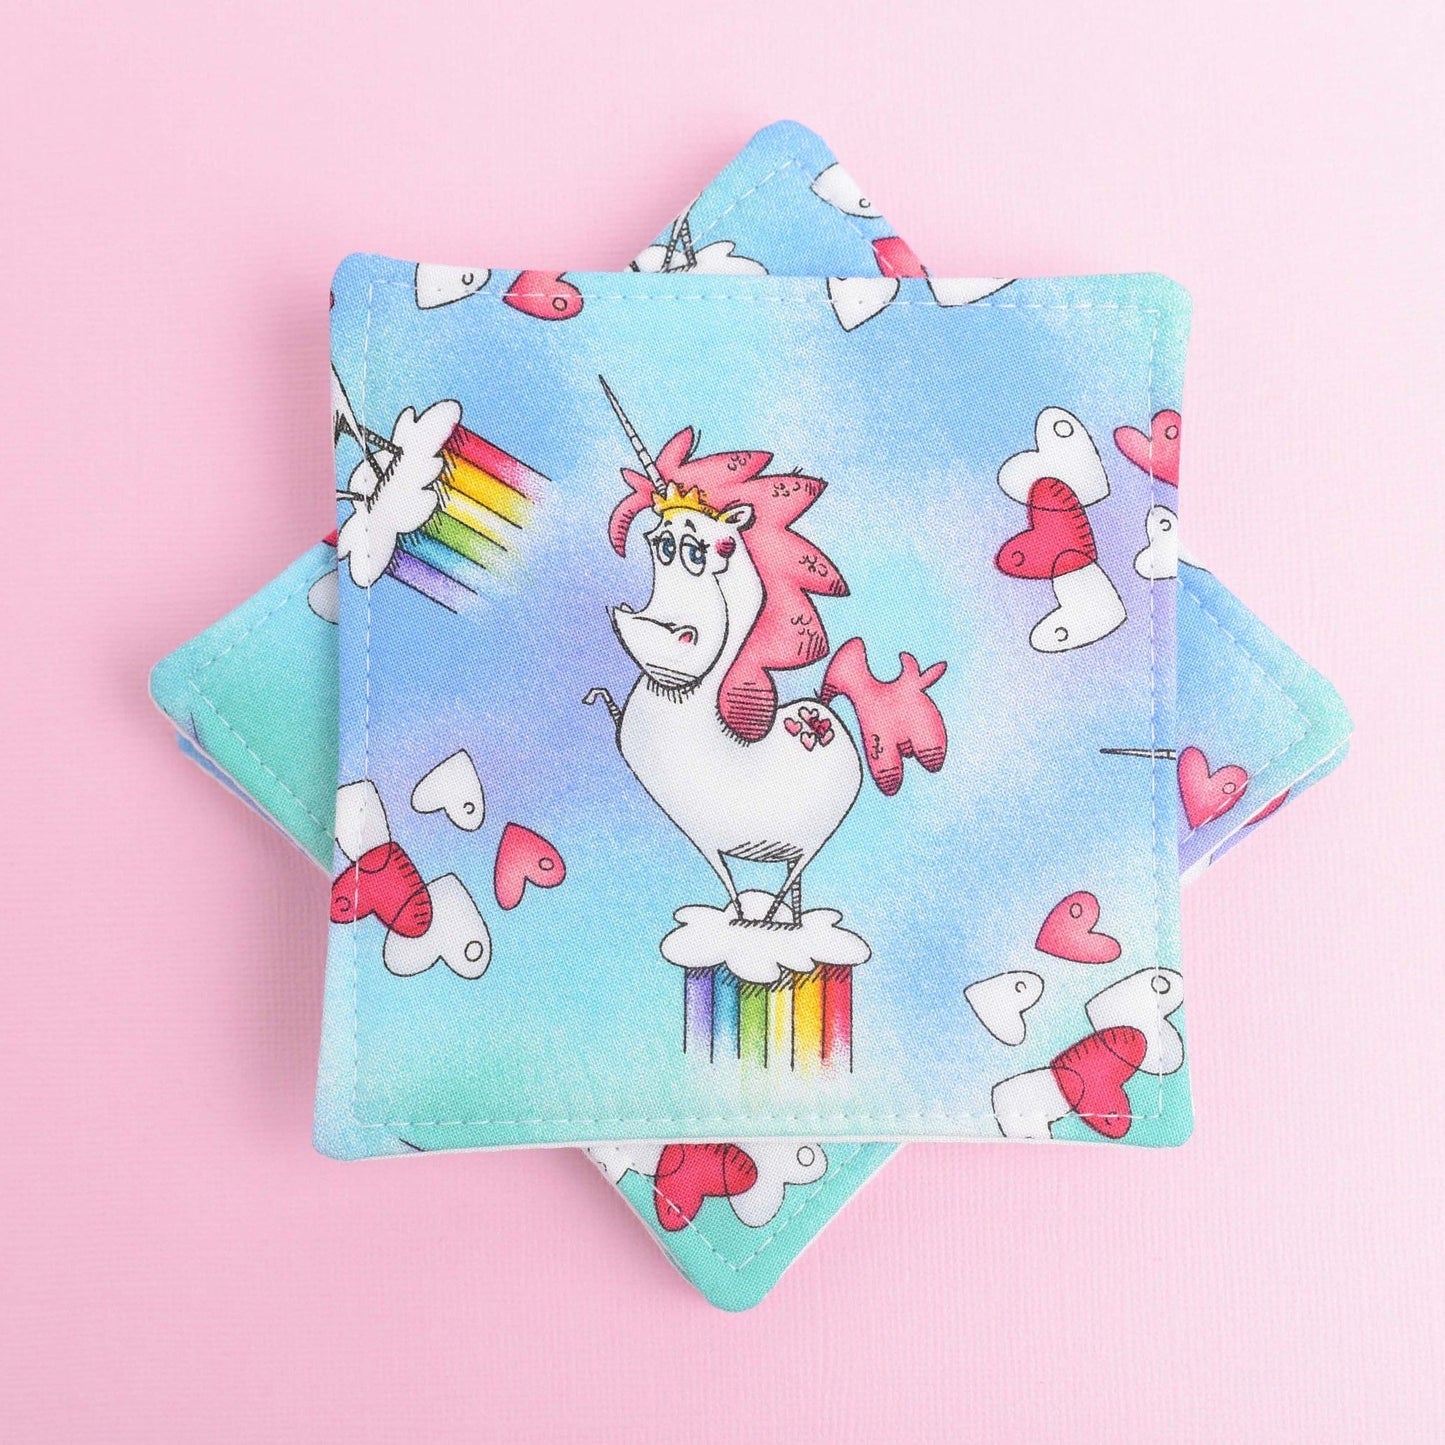 Rainbow Unicorn Fabric Coasters- Set of 4